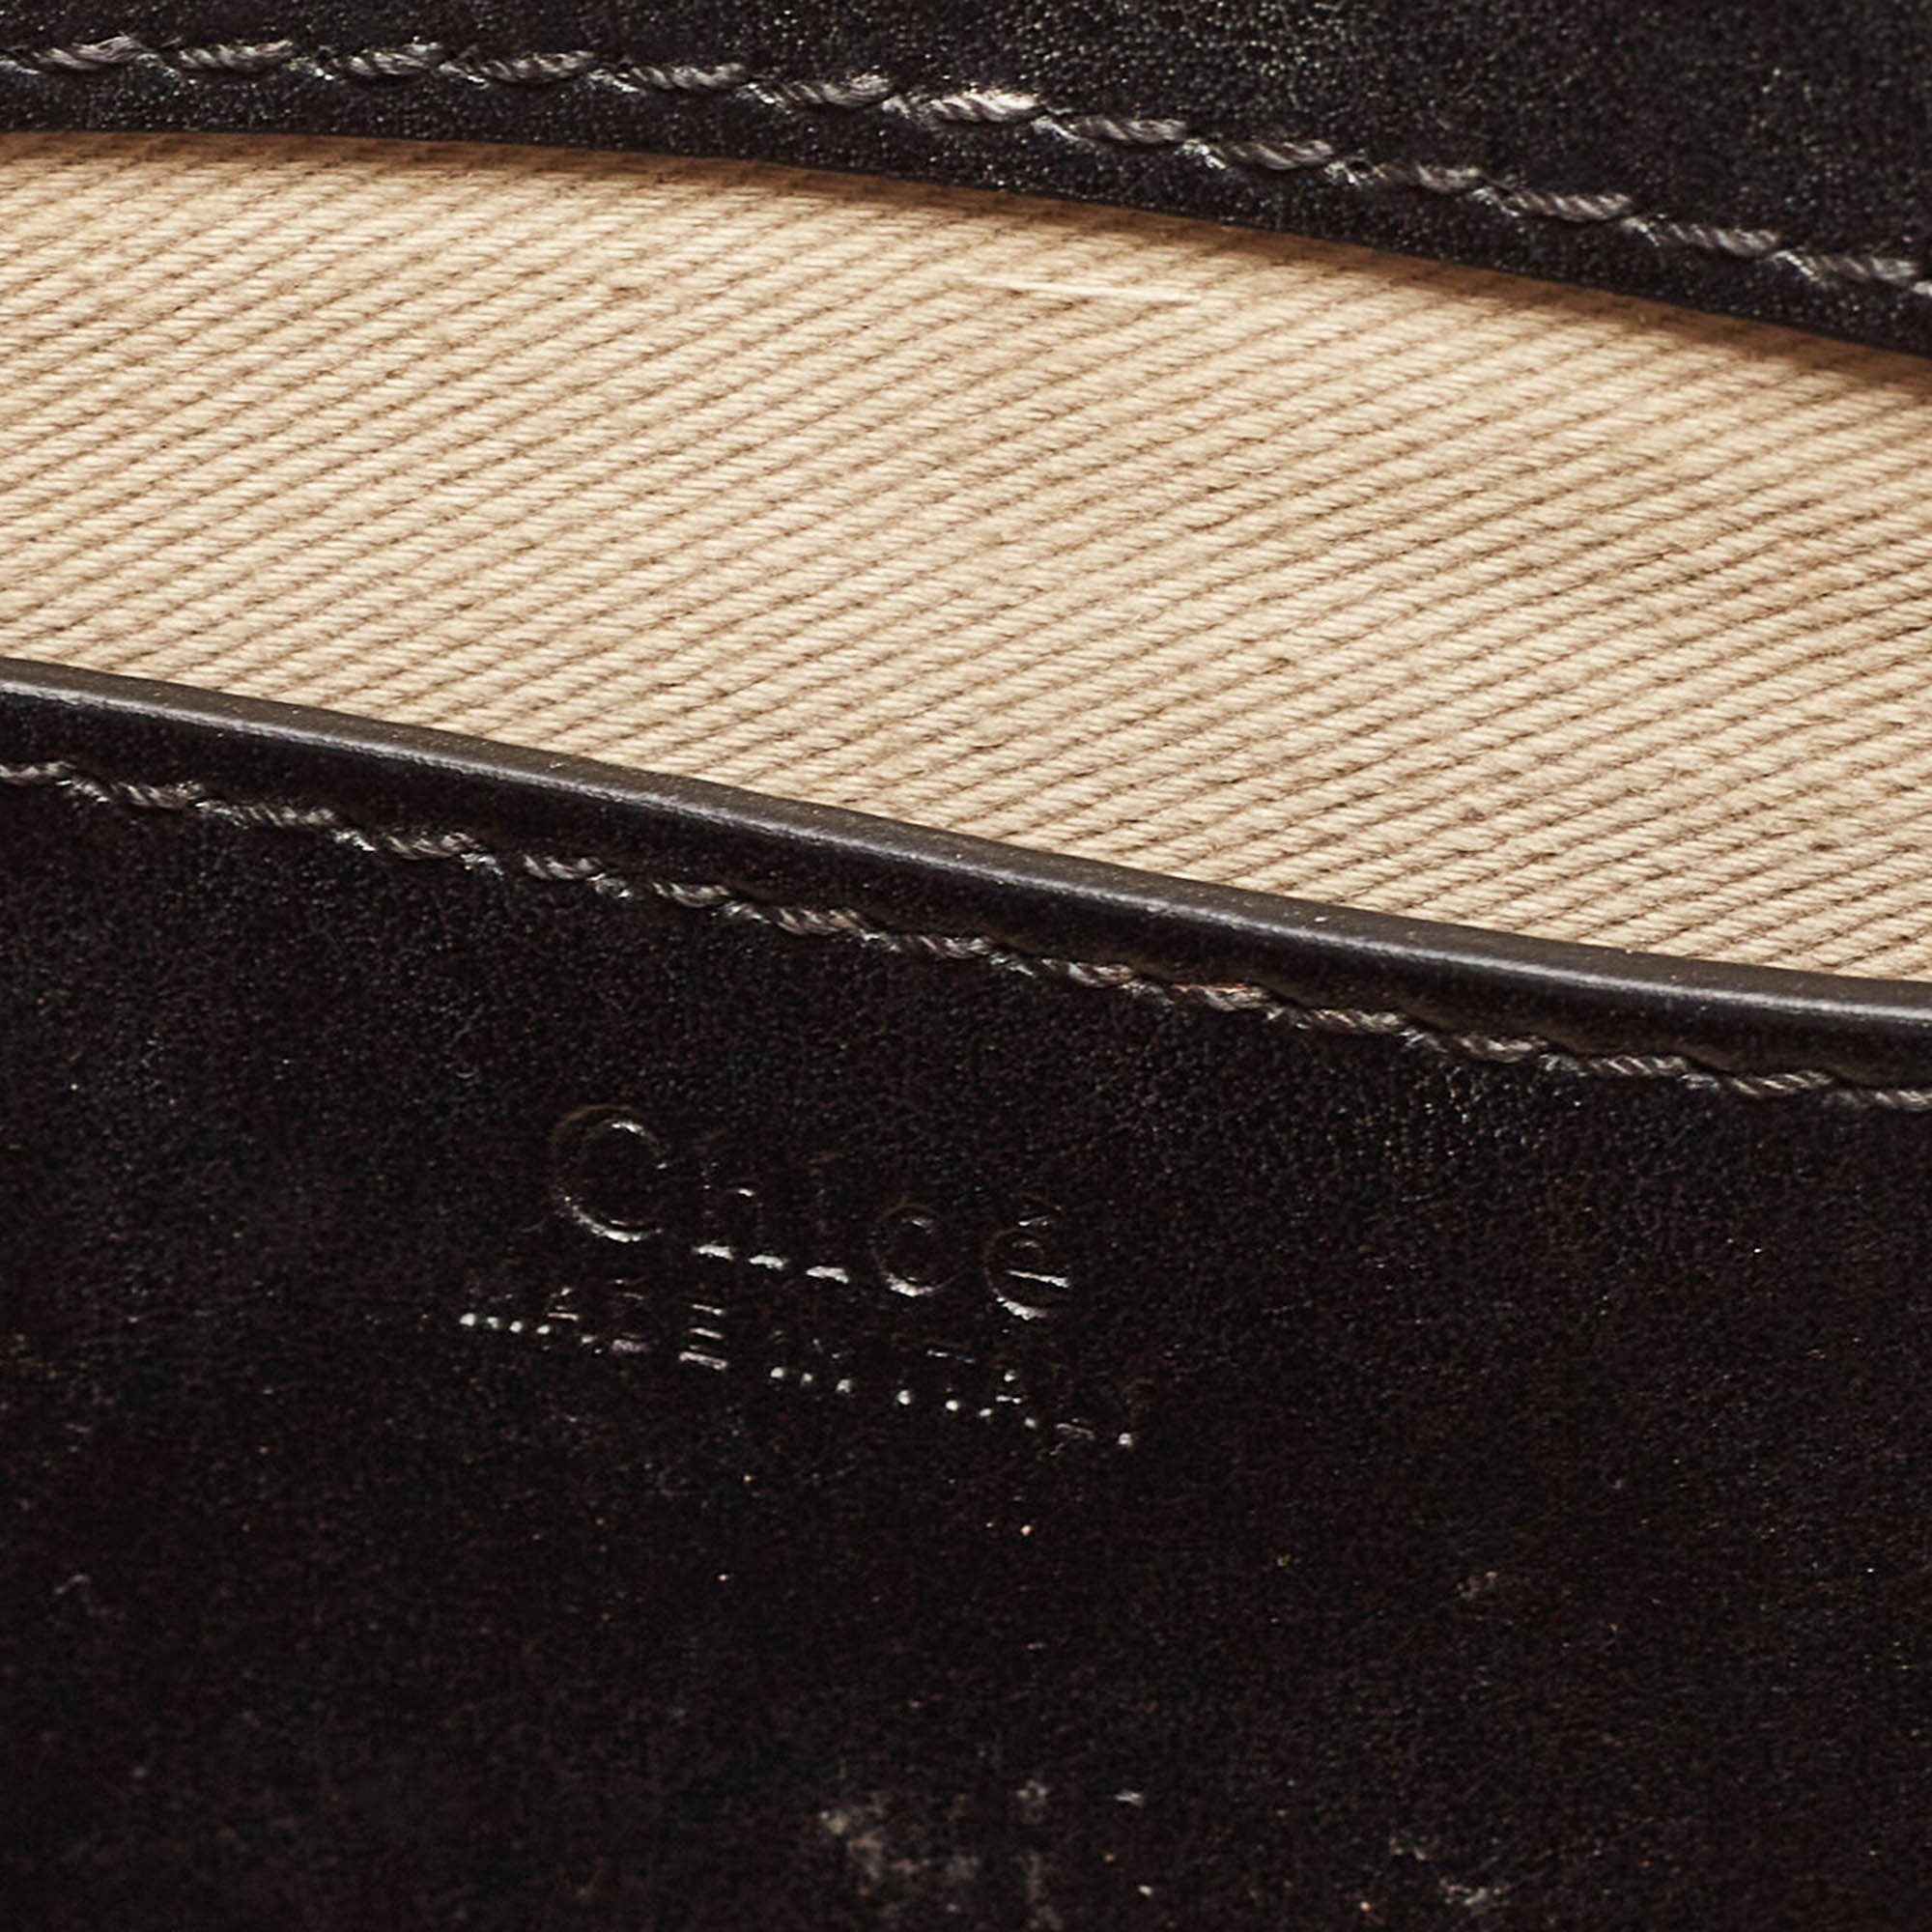 Chloé Black Leather Mini Annie Shoulder Bag